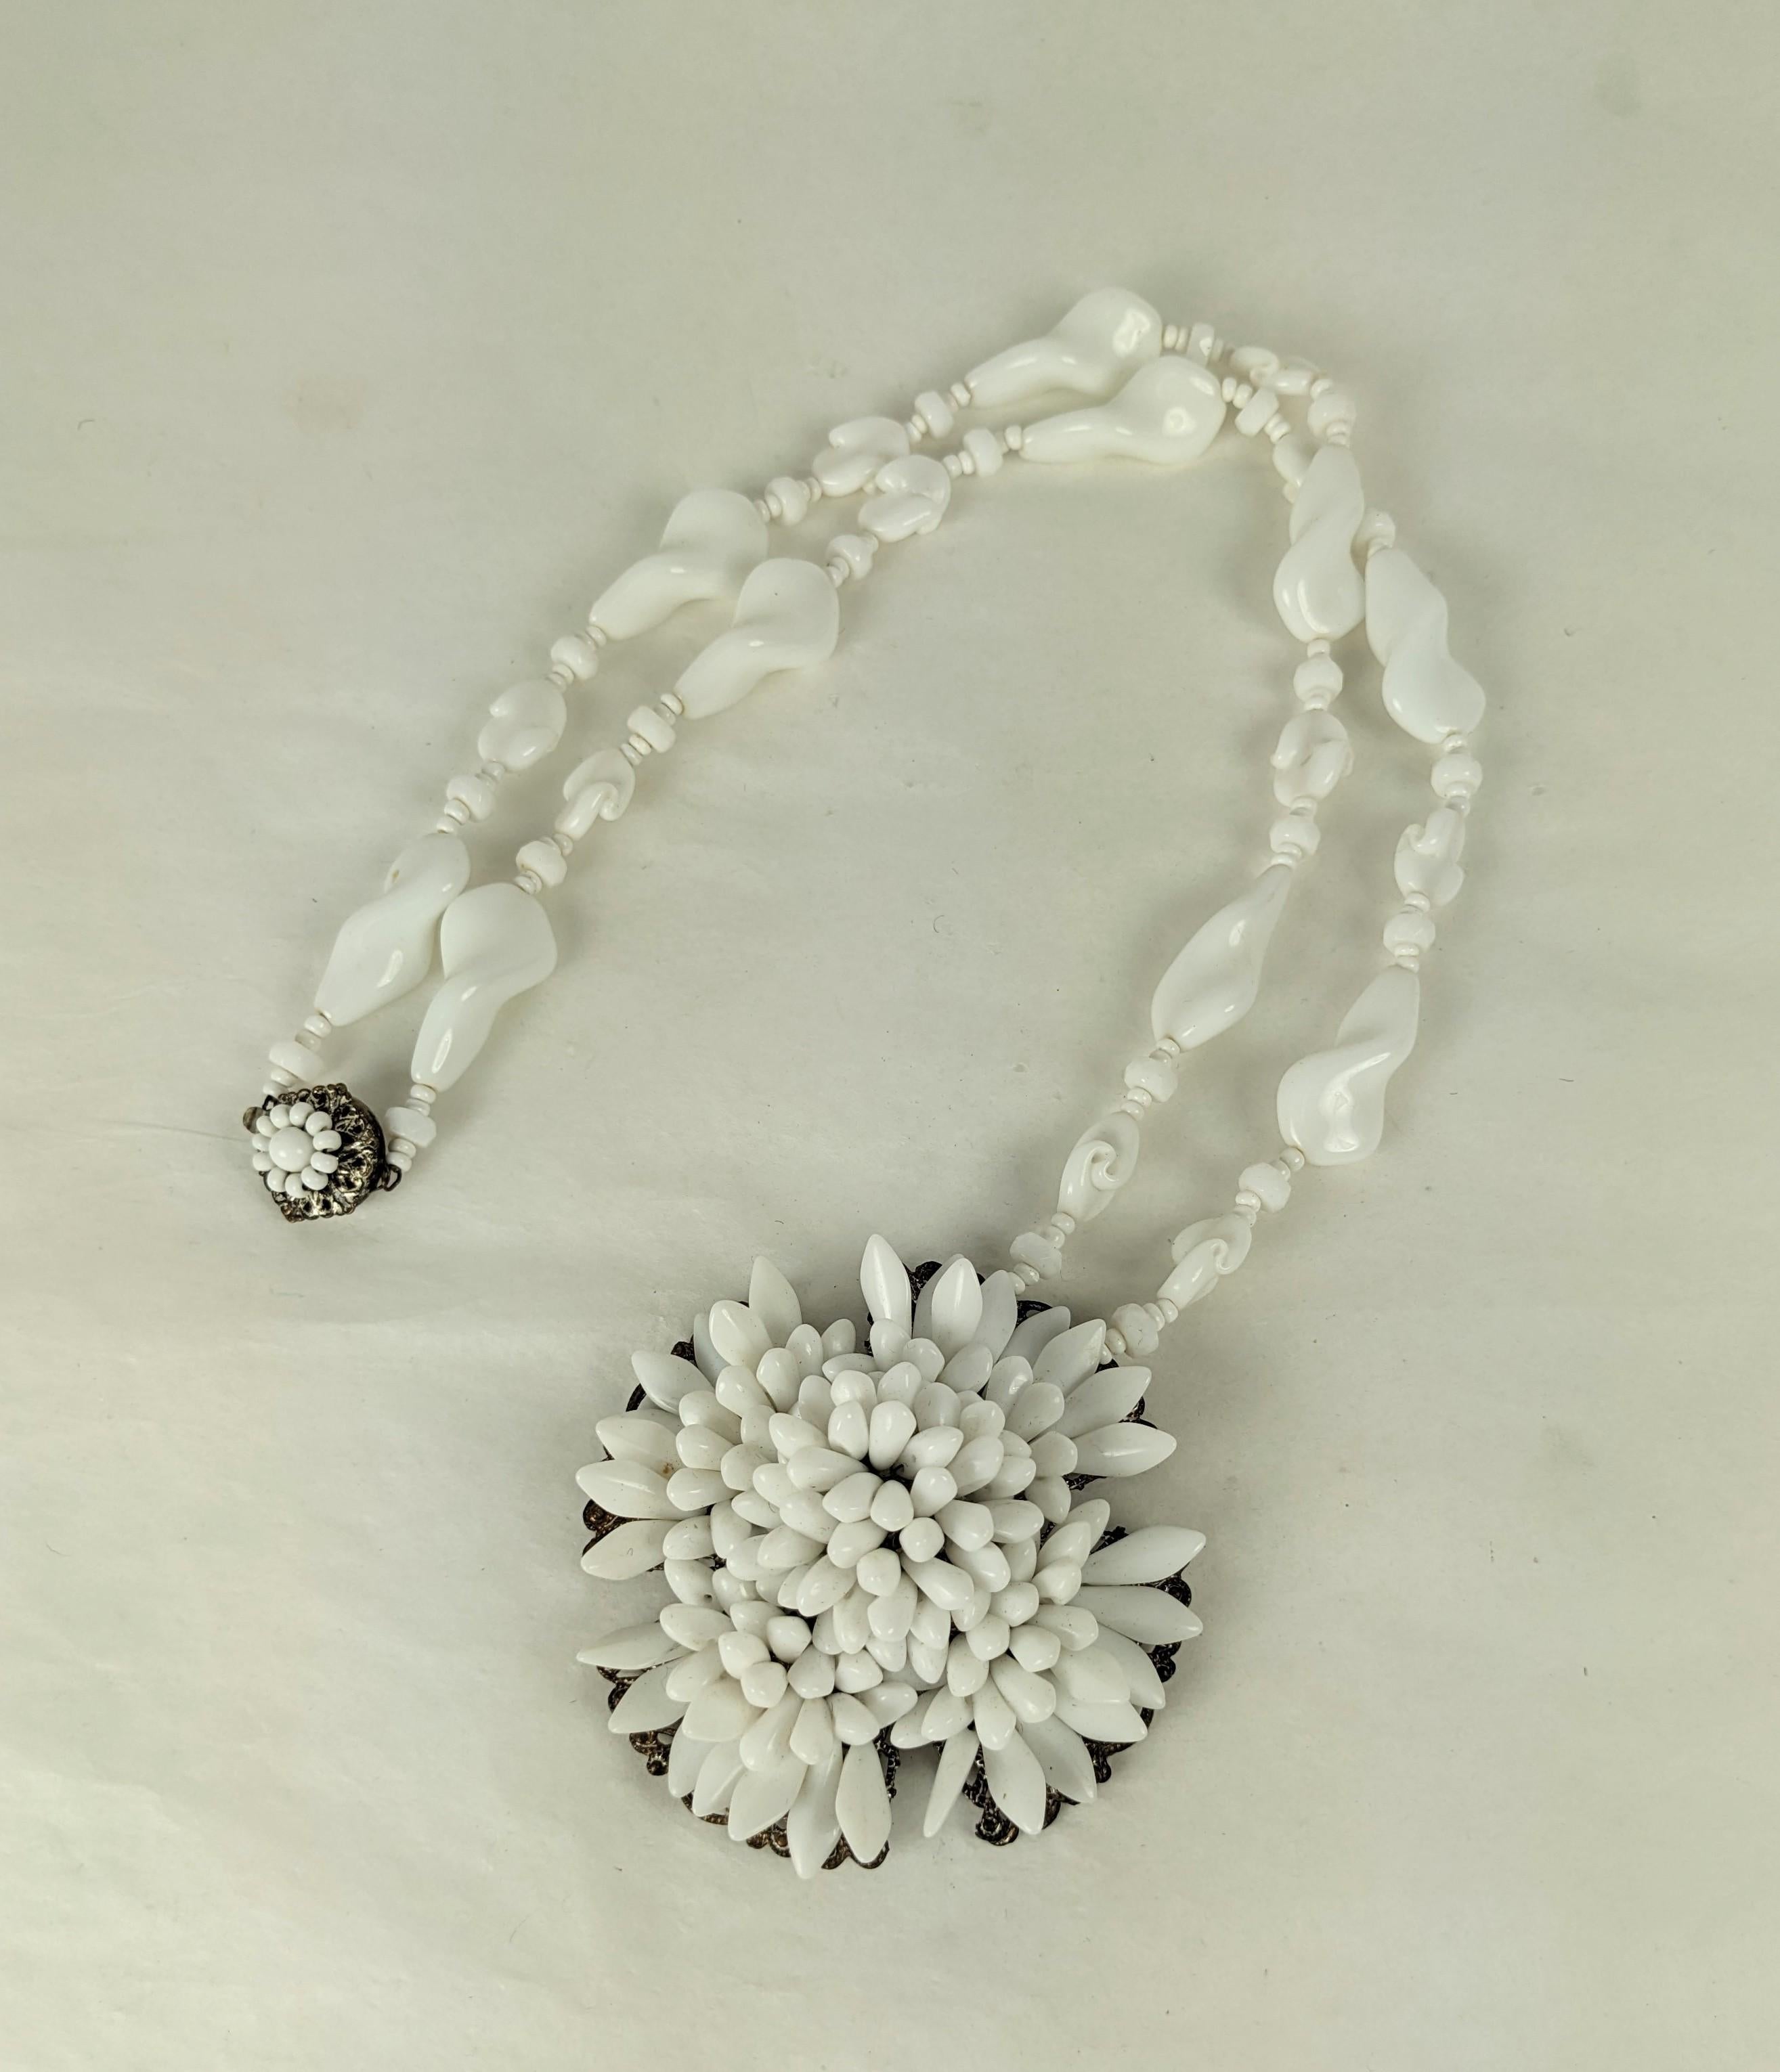 Pendentif en verre au lait Miriam Haskell des années 1950. Une base en filigrane est cousue à la main avec des dizaines de pointes en verre de lait sur un collier de grosses perles tourbillonnantes et de perles de rocaille faites à la main. Signé